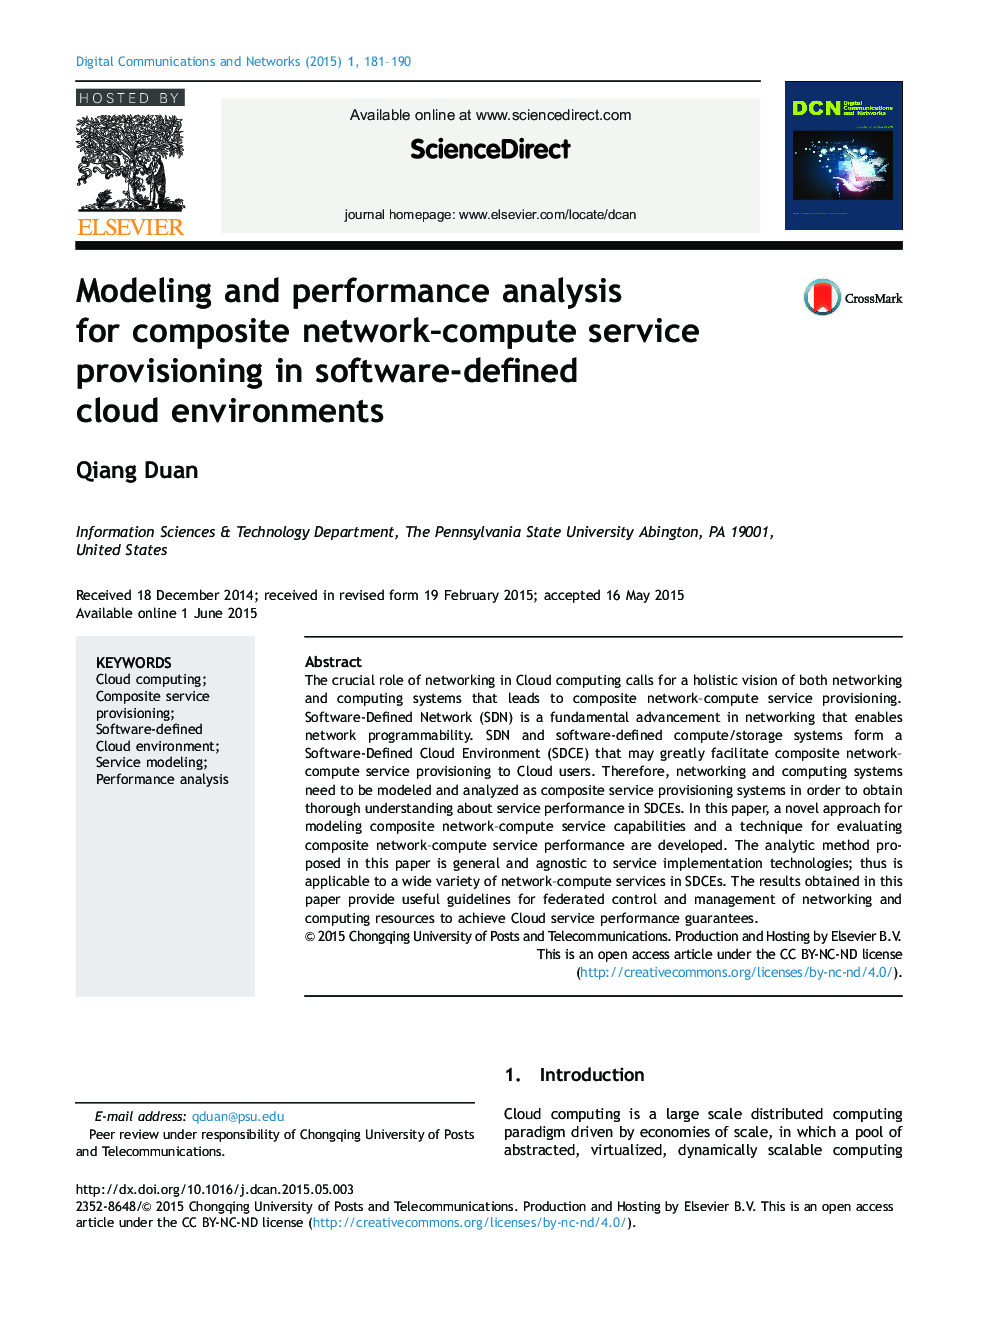 مدل سازی و تجزیه و تحلیل عملکرد برای شبکه های کامپوزیتی محاسبه ارائه خدمات در محیط های ابر تعریف شده توسط نرم افزار 